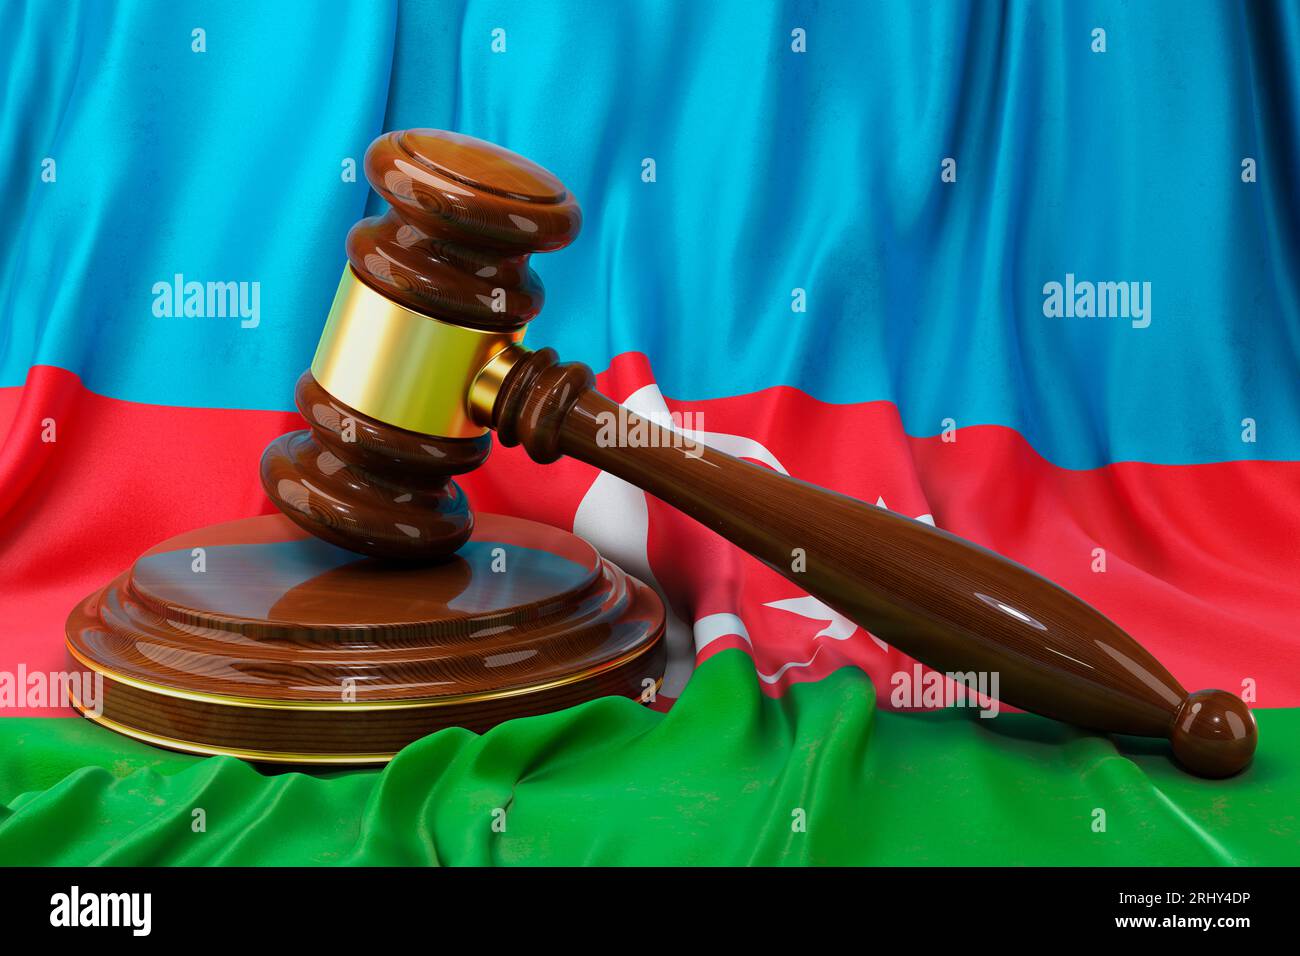 Aserbaidschanisches Recht- und Justizkonzept. Holzgabel auf der Flagge Aserbaidschans, 3D-Rendering Stockfoto